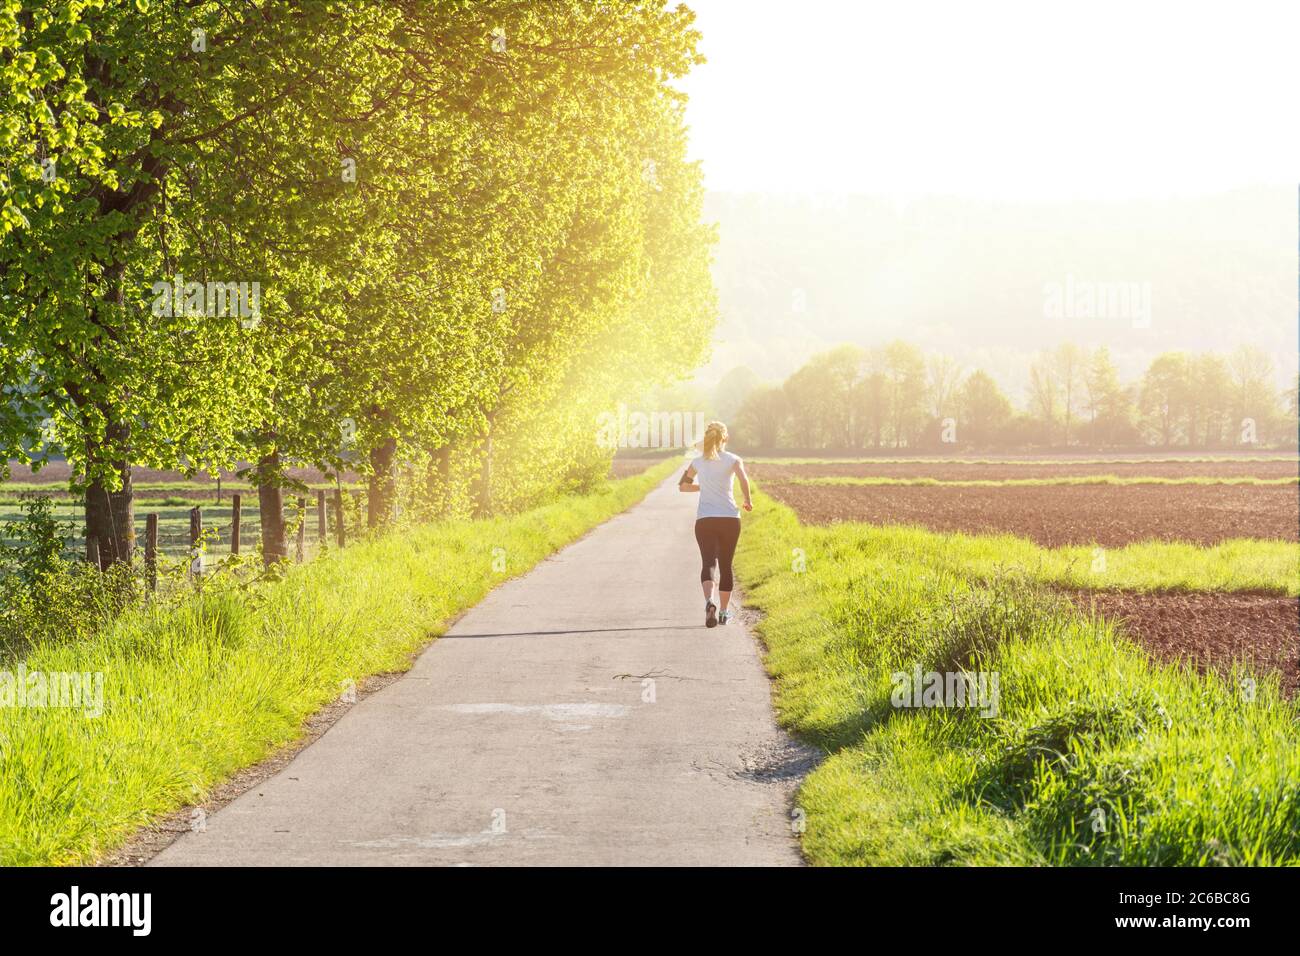 Joggingin auf einer Landstraße, die in Richtung aufgehender Sonne läuft Stockfoto